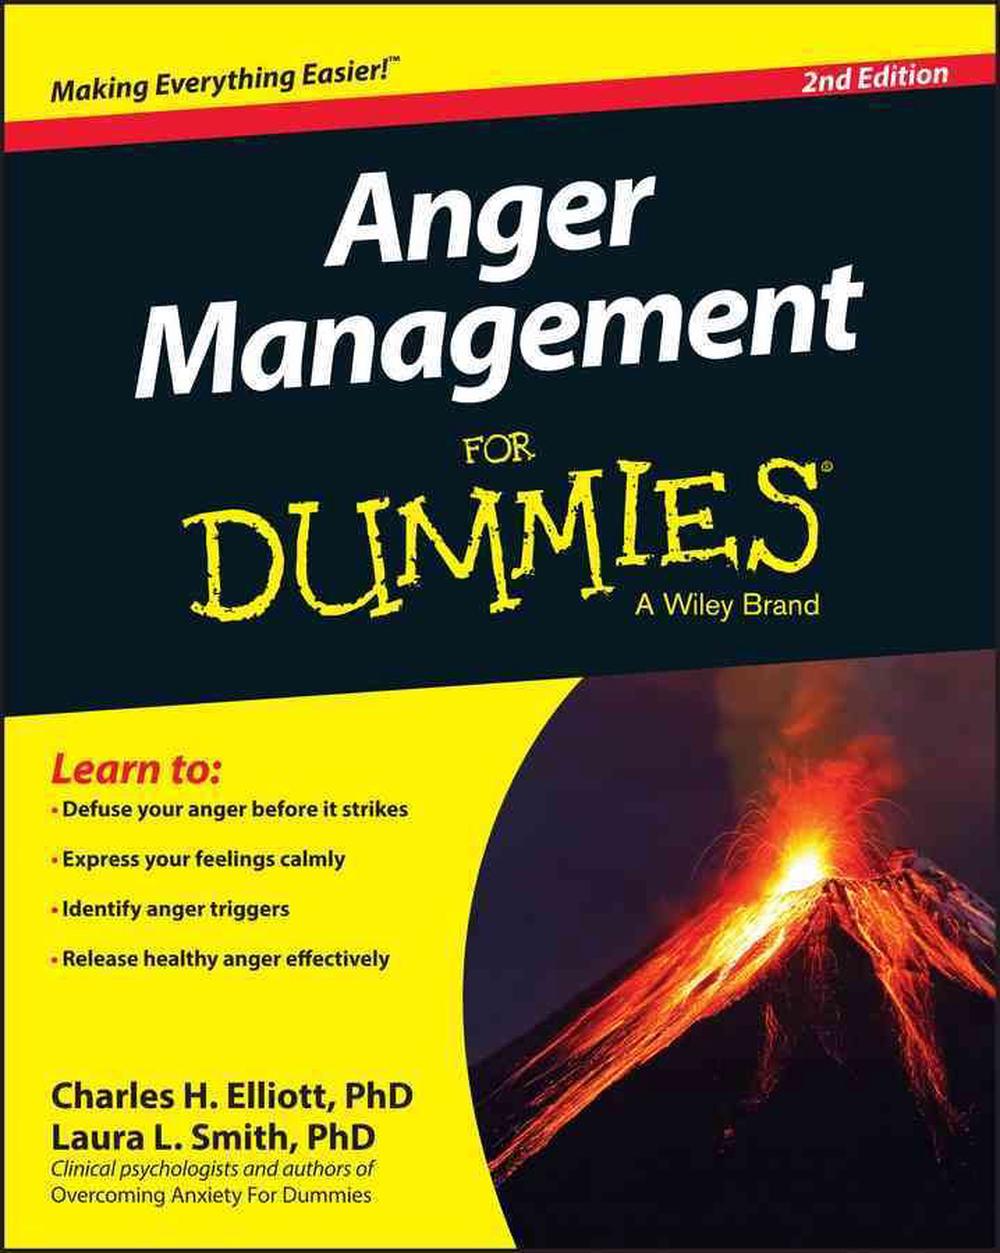 78 List Anger Management Books Online 